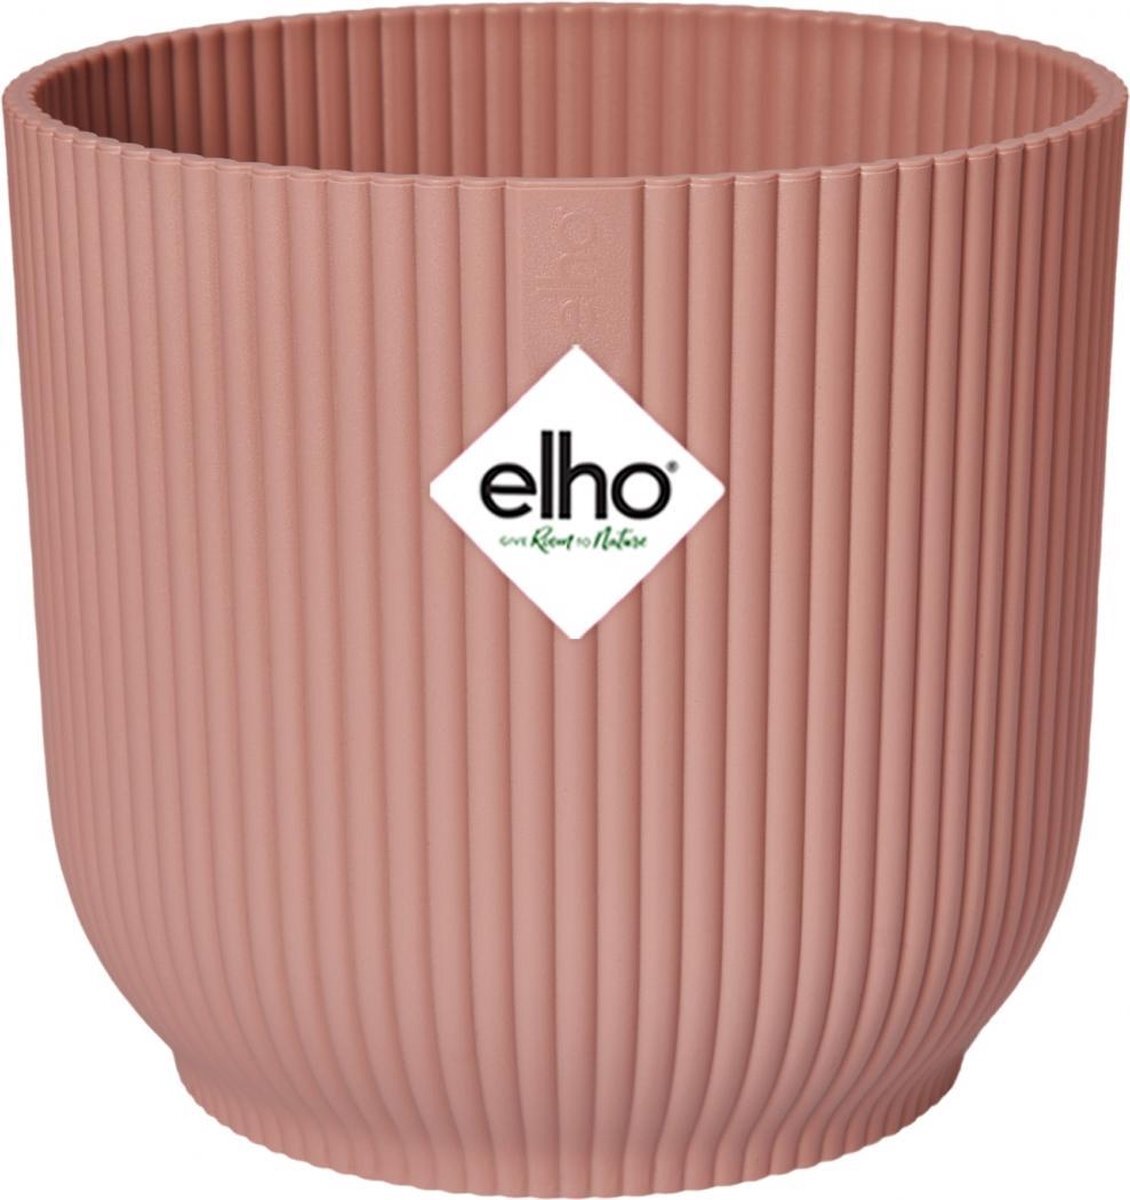 elho Vibes Fold Rond 30 - Bloempot voor Binnen - 100% Gerecycled Plastic - Ø 29,5 x H 27,2 - Roze/Delicaat Roze